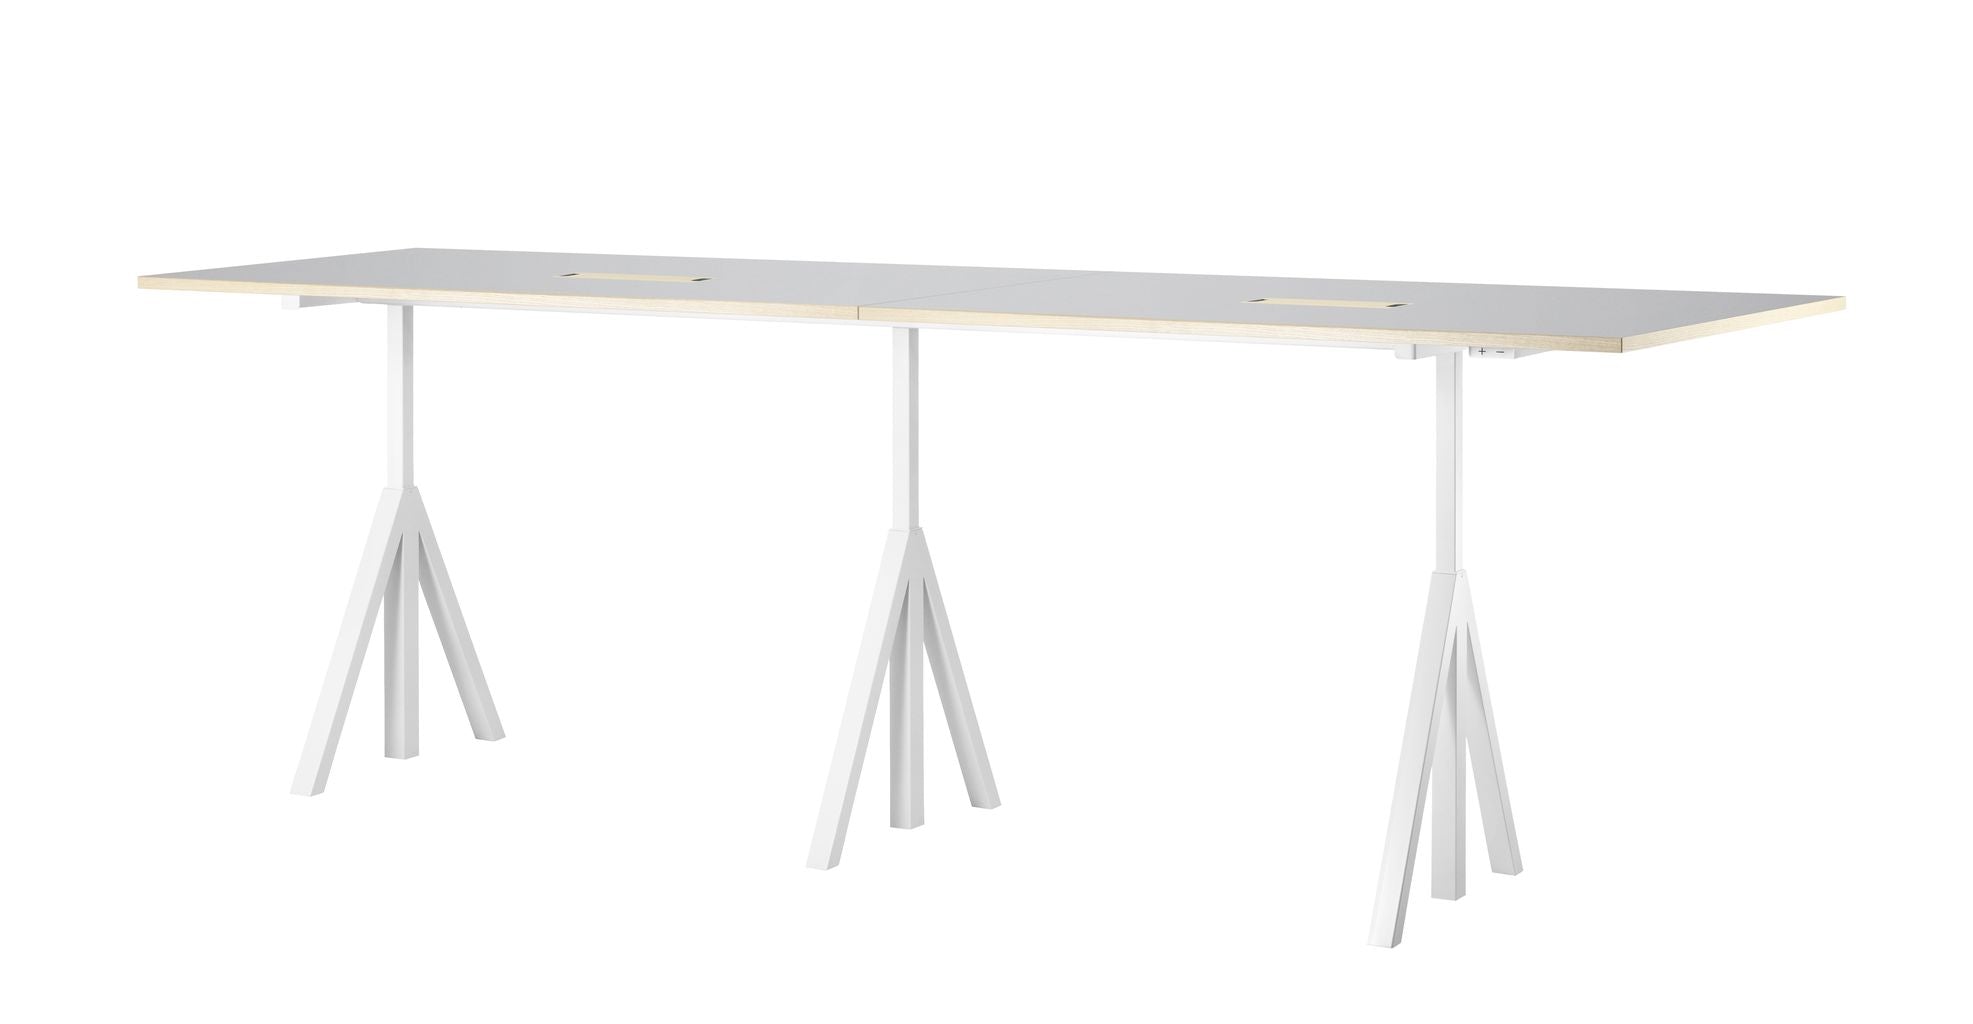 Tabella Conferenza regolabile dell'altezza mobile a corda 90x180 cm, linoleum grigio chiaro